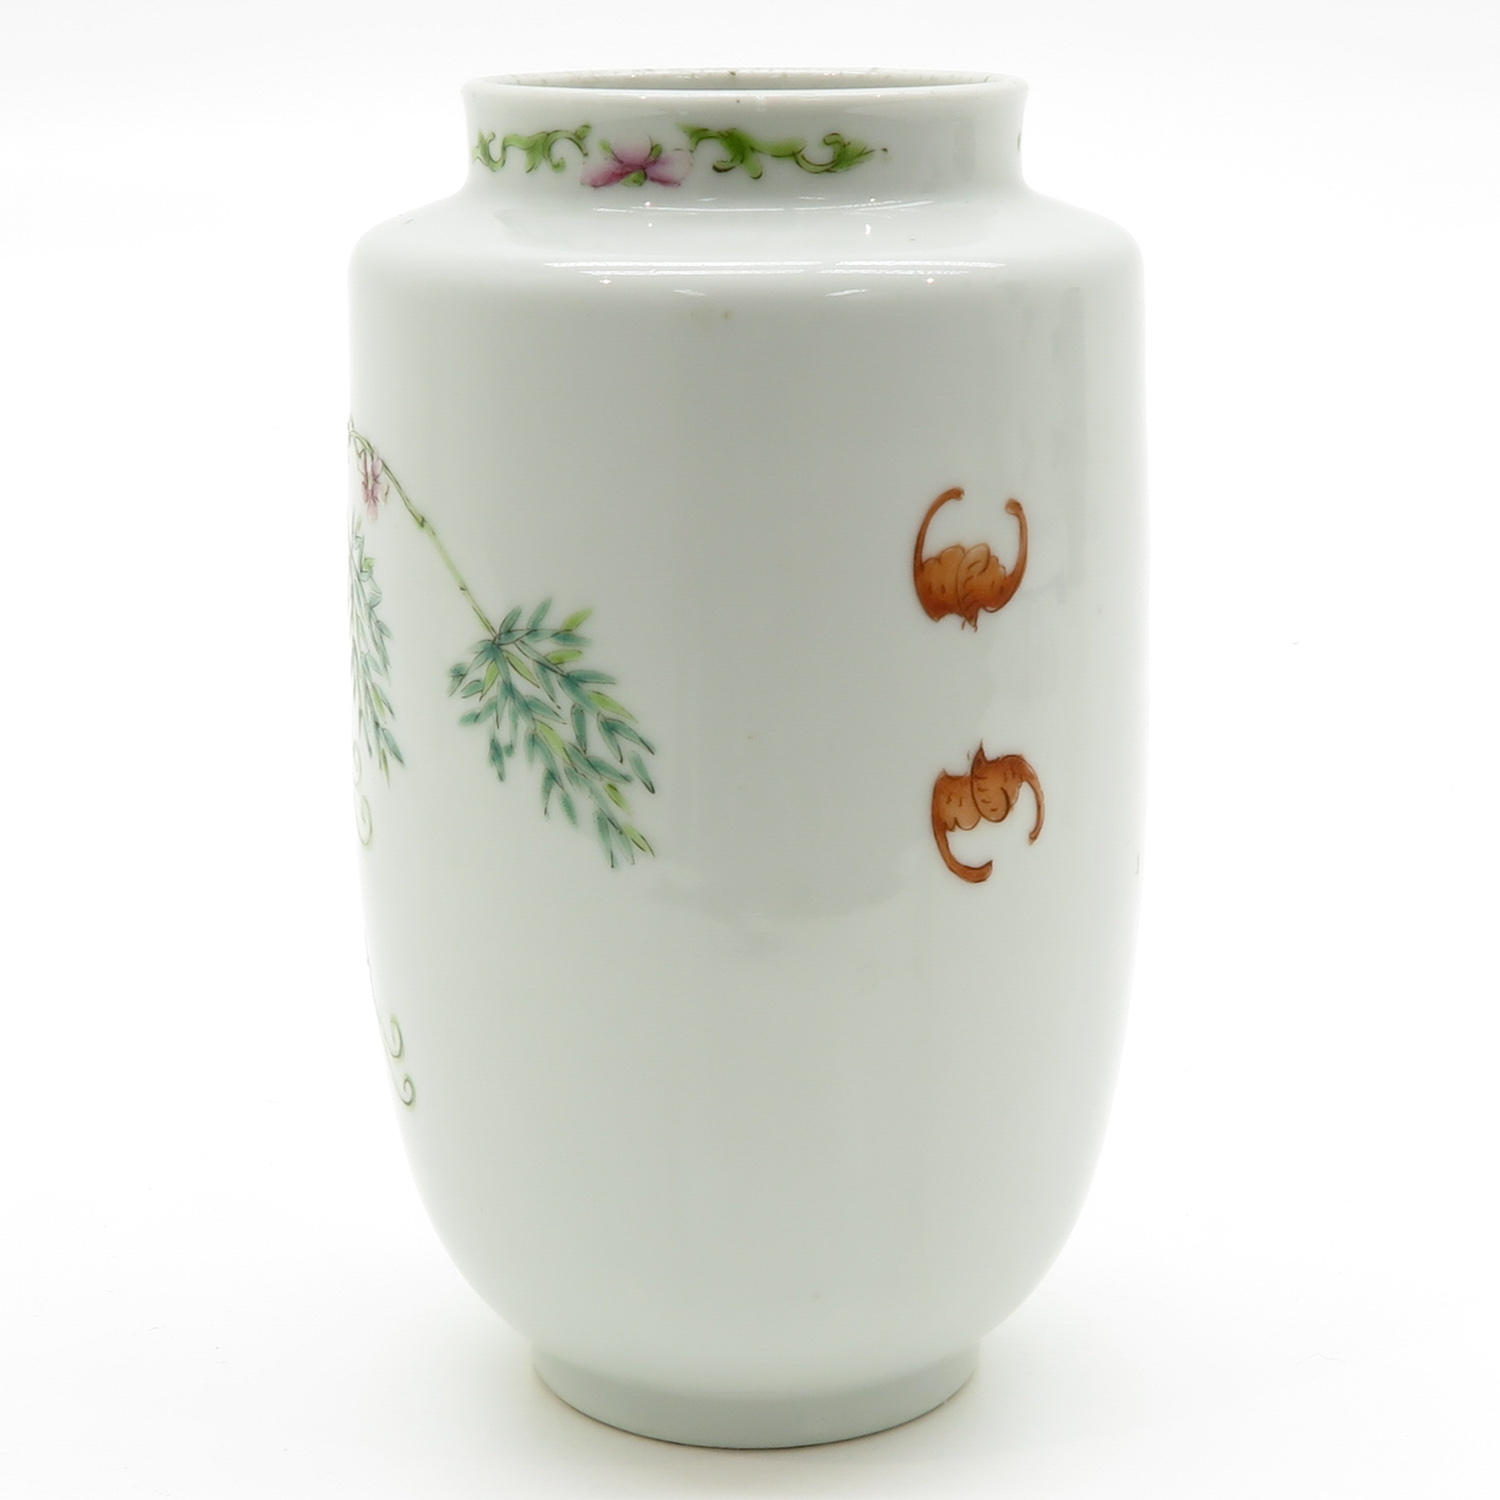 China Porcelain Vase - Image 3 of 6